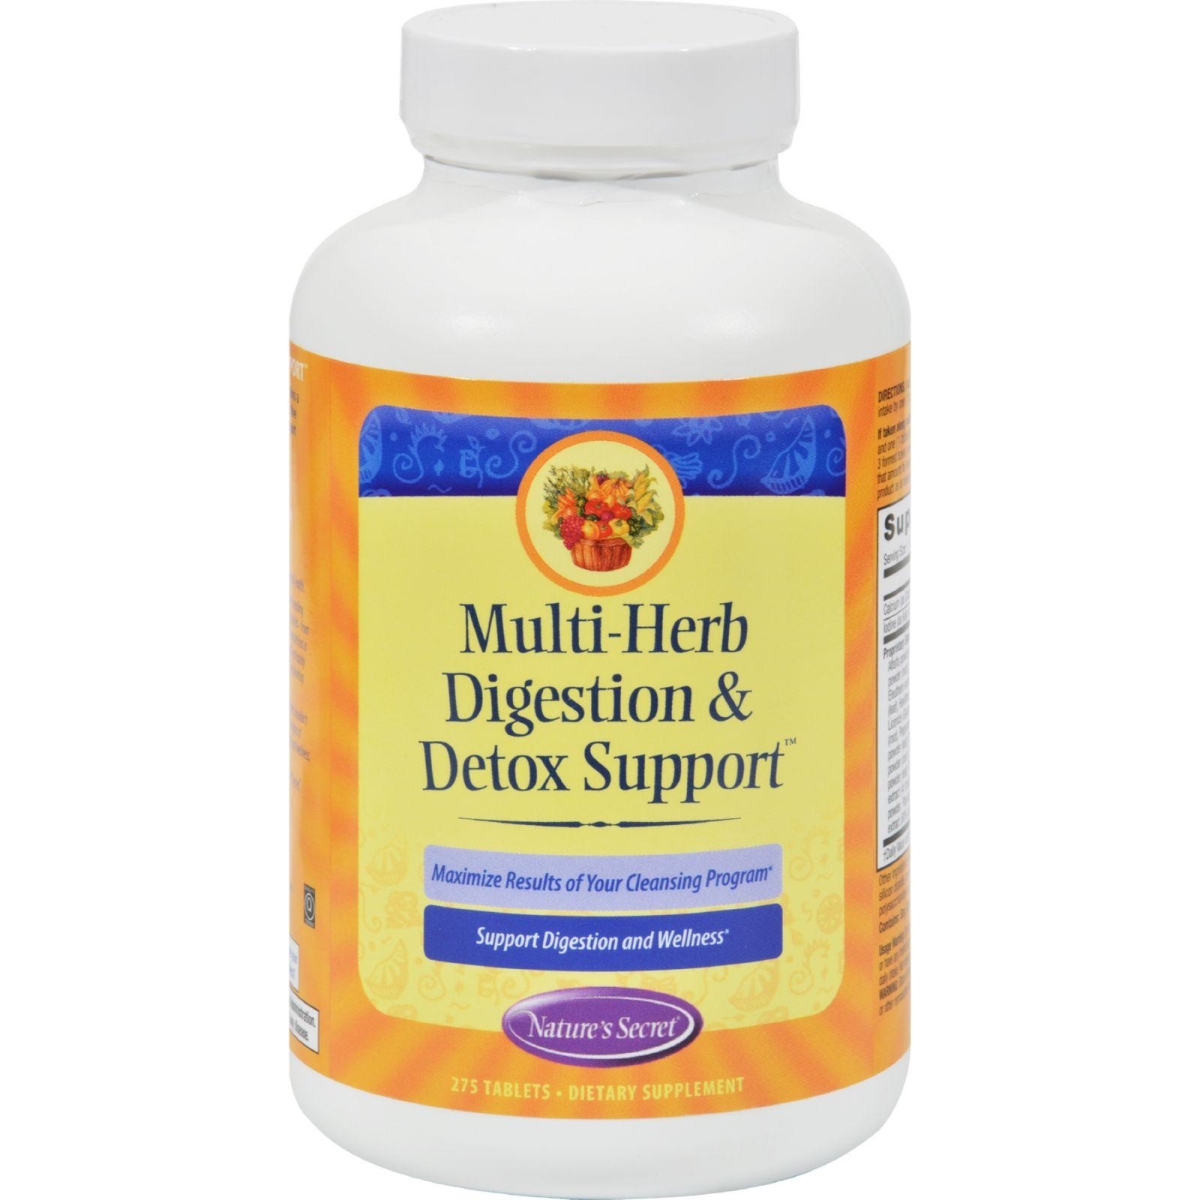 Hg0944793 Multi-herb Digestion & Detox Support - 275 Tablets